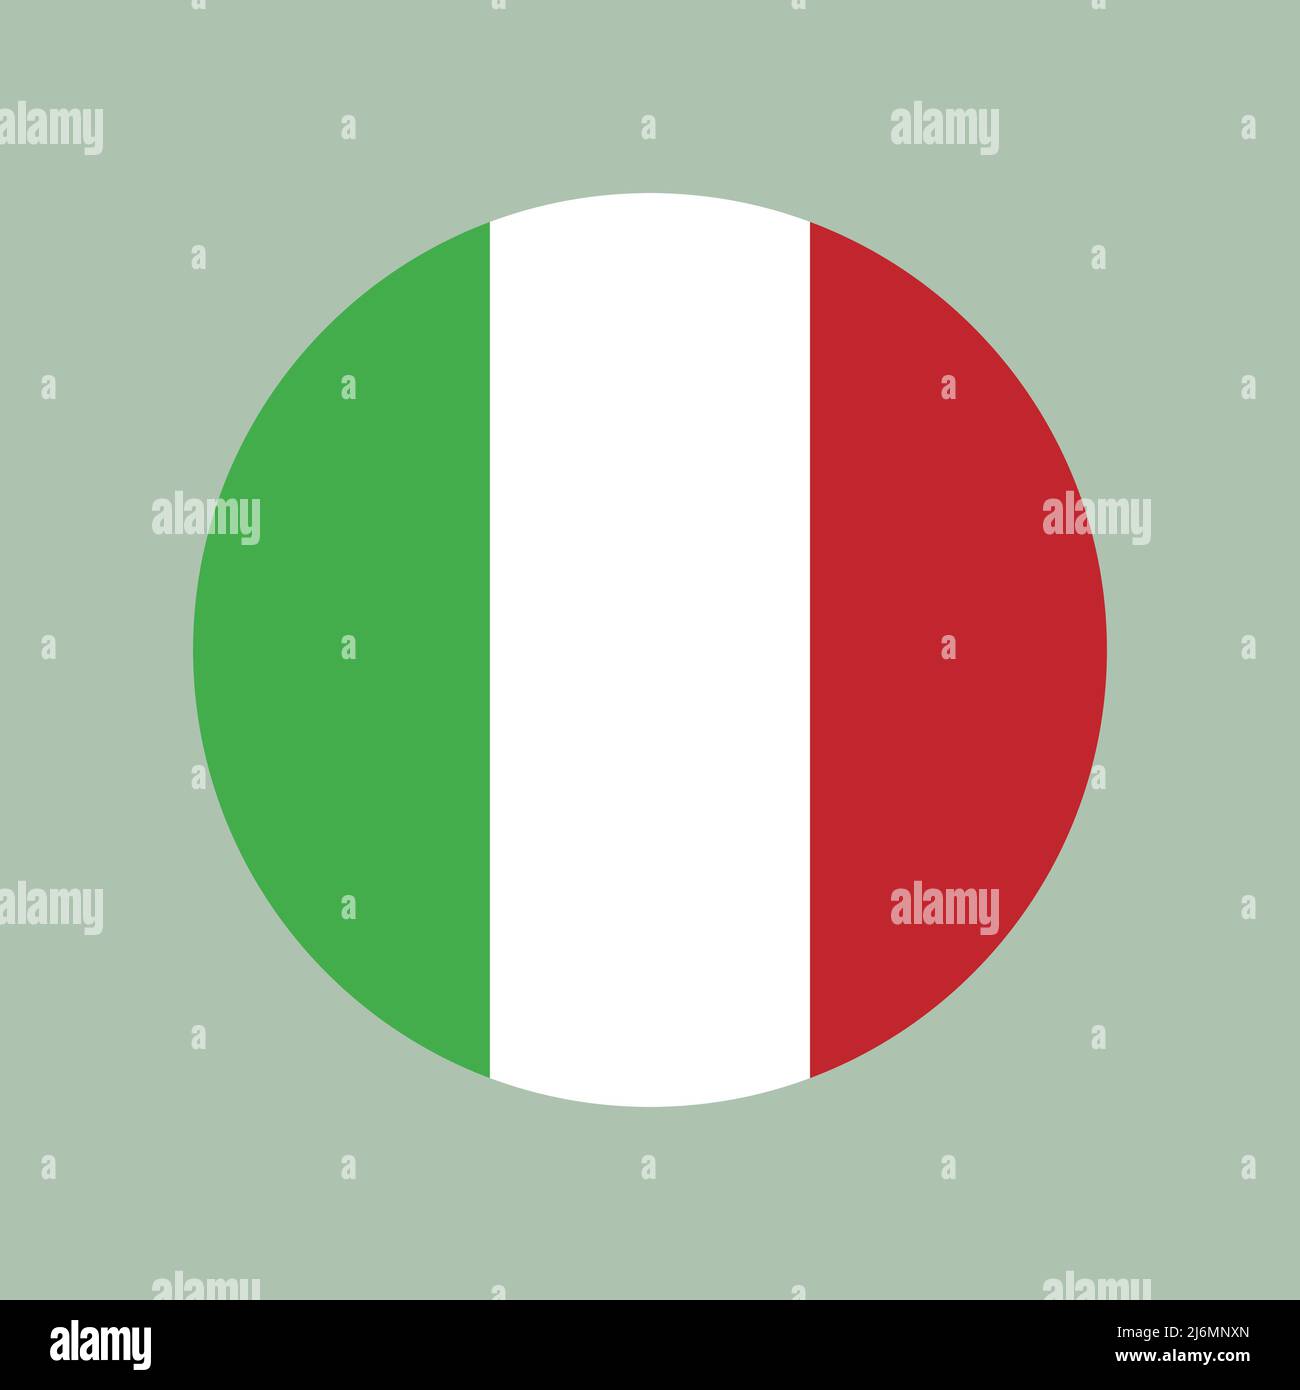 Lấy cảm hứng từ cờ Ý, biểu tượng trái tim trên nền trắng và đỏ sẽ khiến bạn mê mẩn vì sự đơn giản nhưng đầy ý nghĩa. Hãy xem ngay hình ảnh này và tìm hiểu thêm về Ý - một đất nước mang đậm dấu ấn của nghệ thuật.